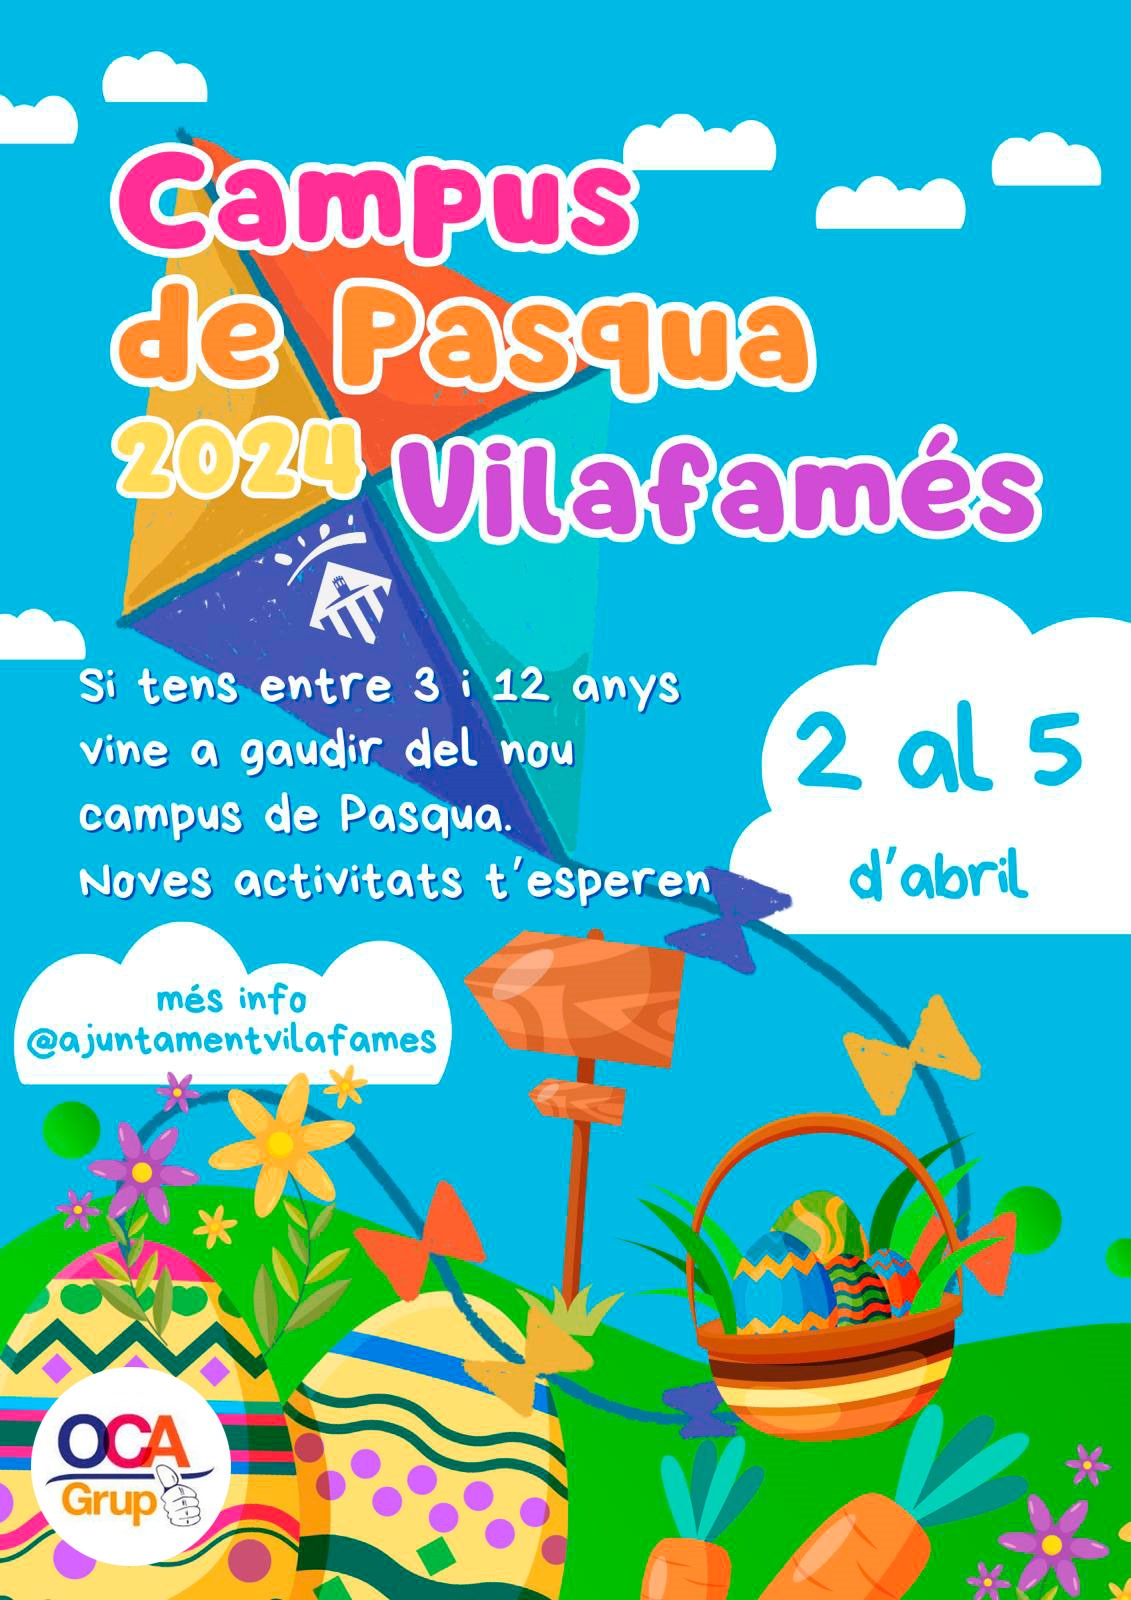 Campus de Pasqua per a facilitar la conciliació familiar a Vilafamés